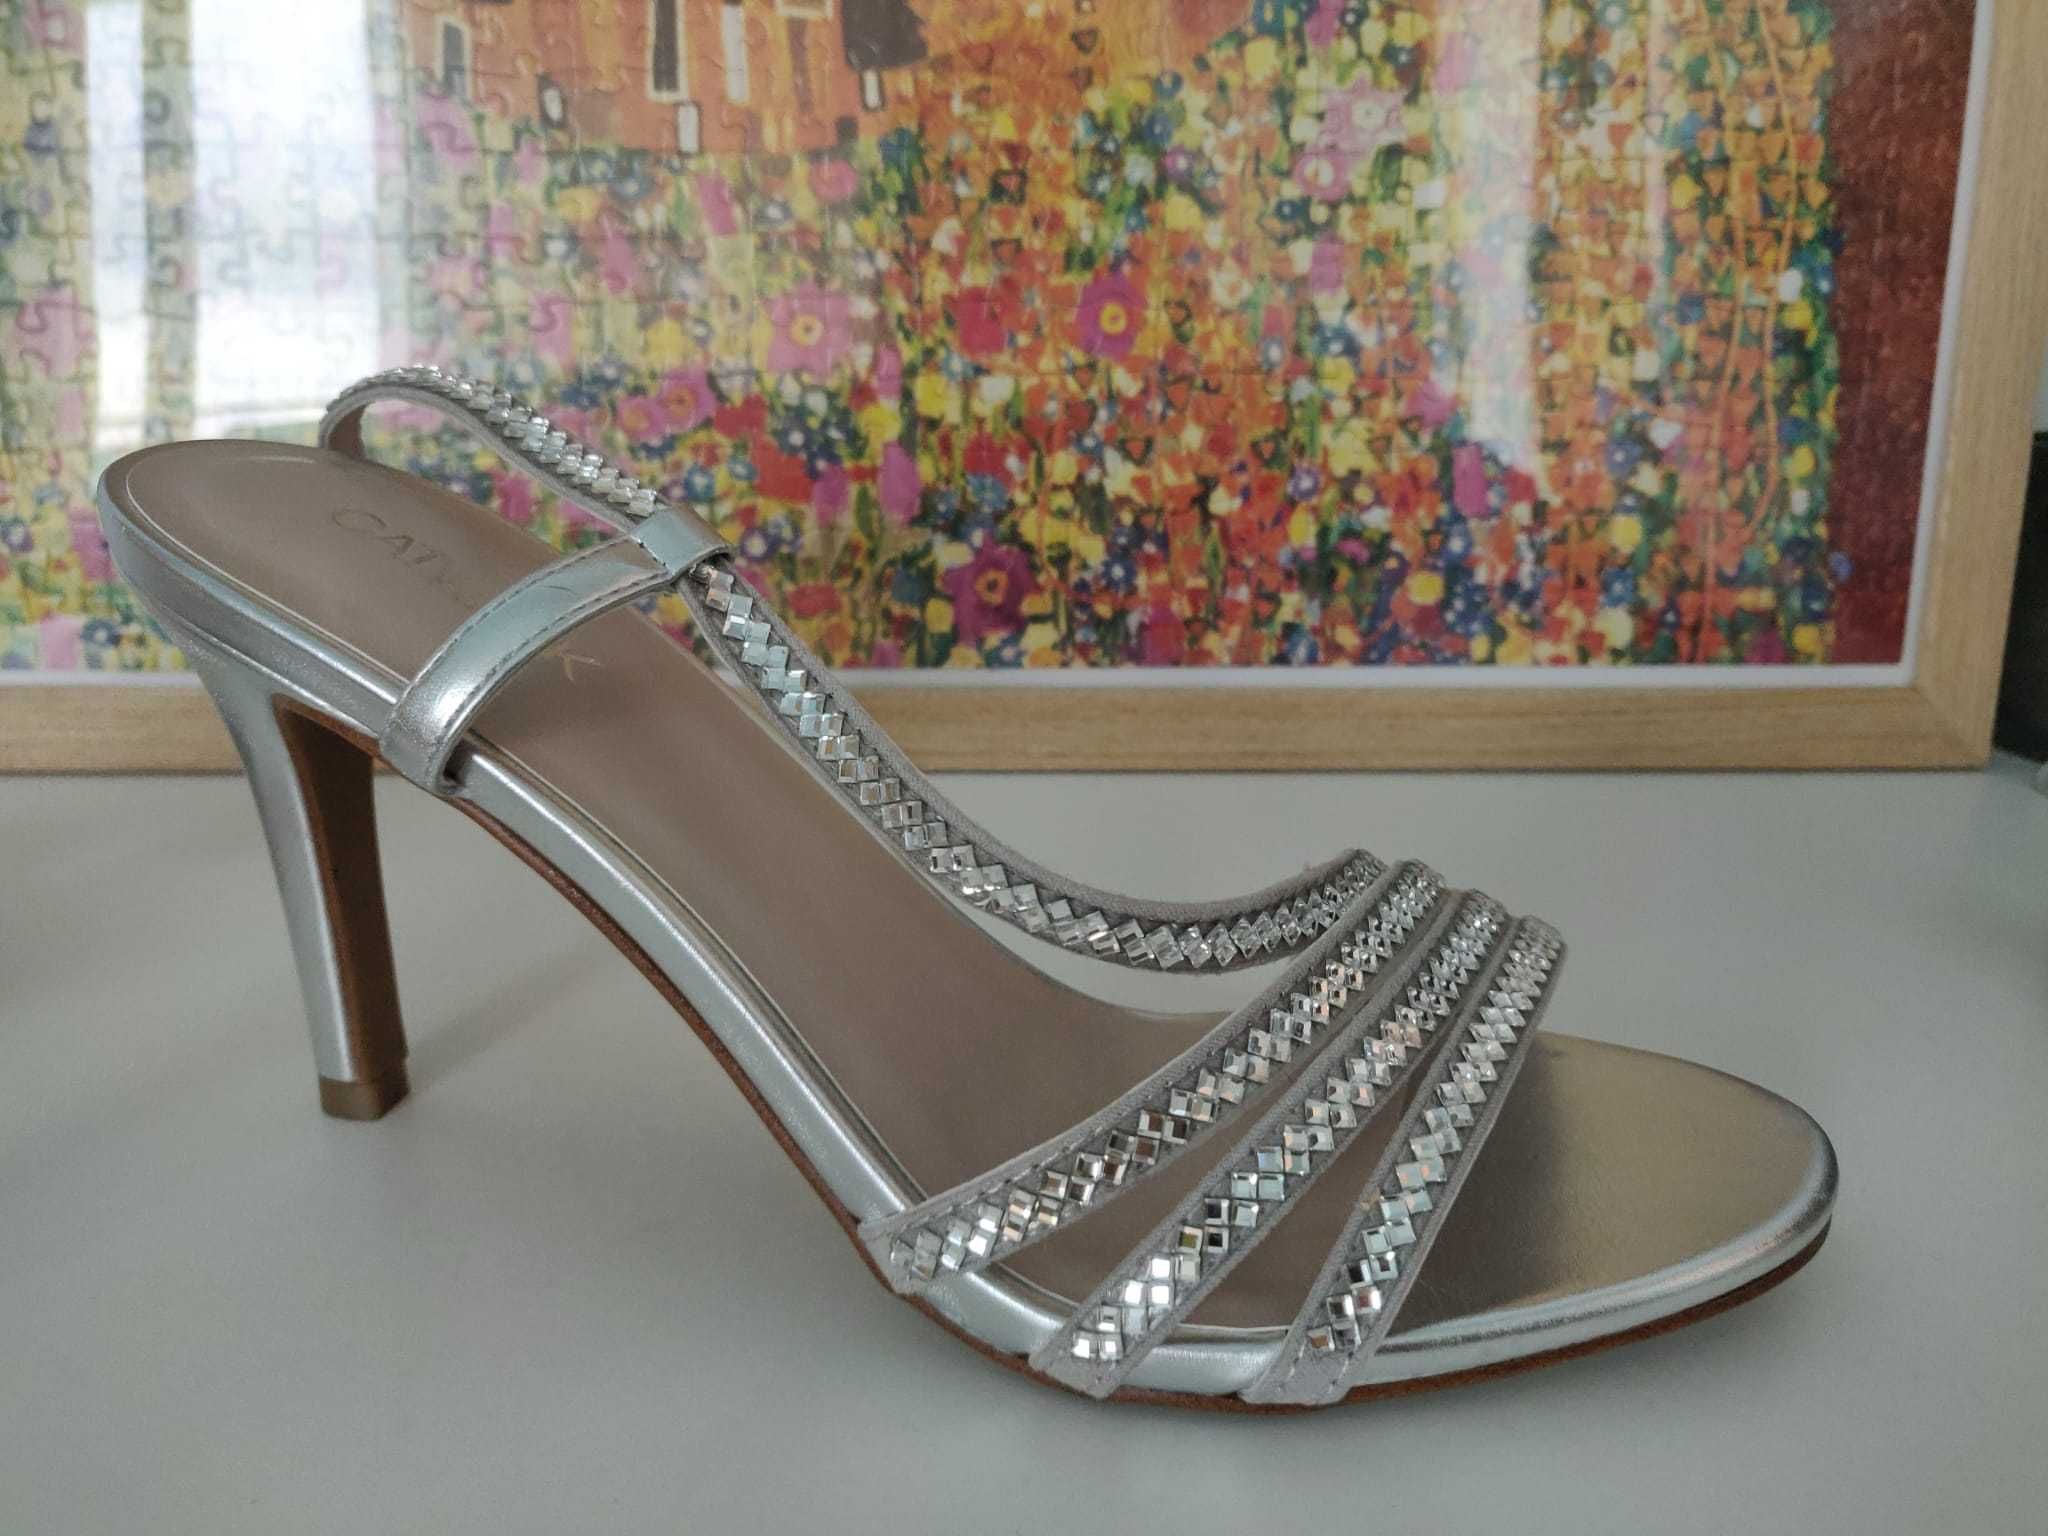 Pantofi (sandale) argintii cu toc mediu, marimea 40